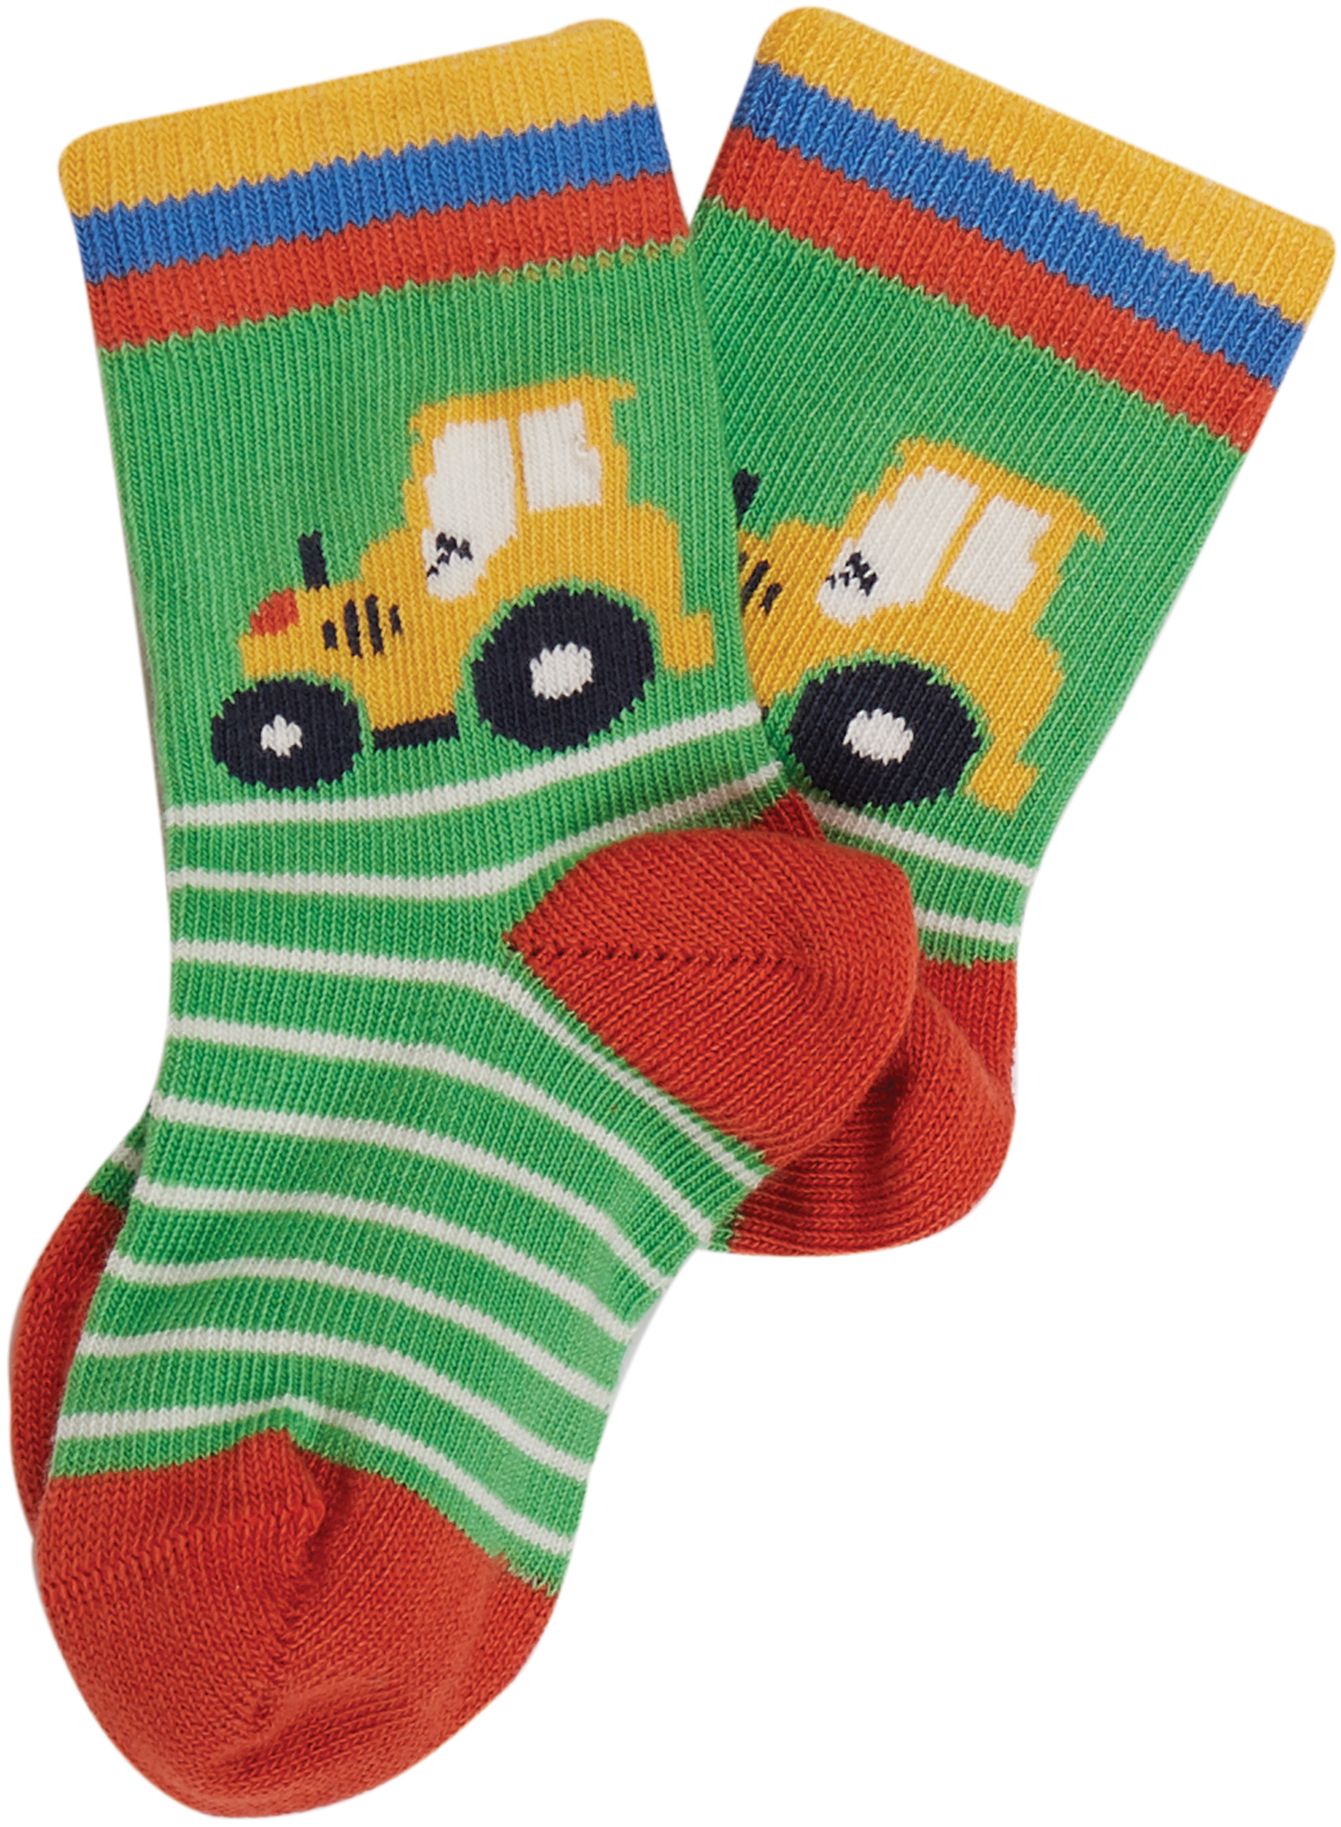 Gemusterte Kinder-Socken im 3er-Pack mit Traktor